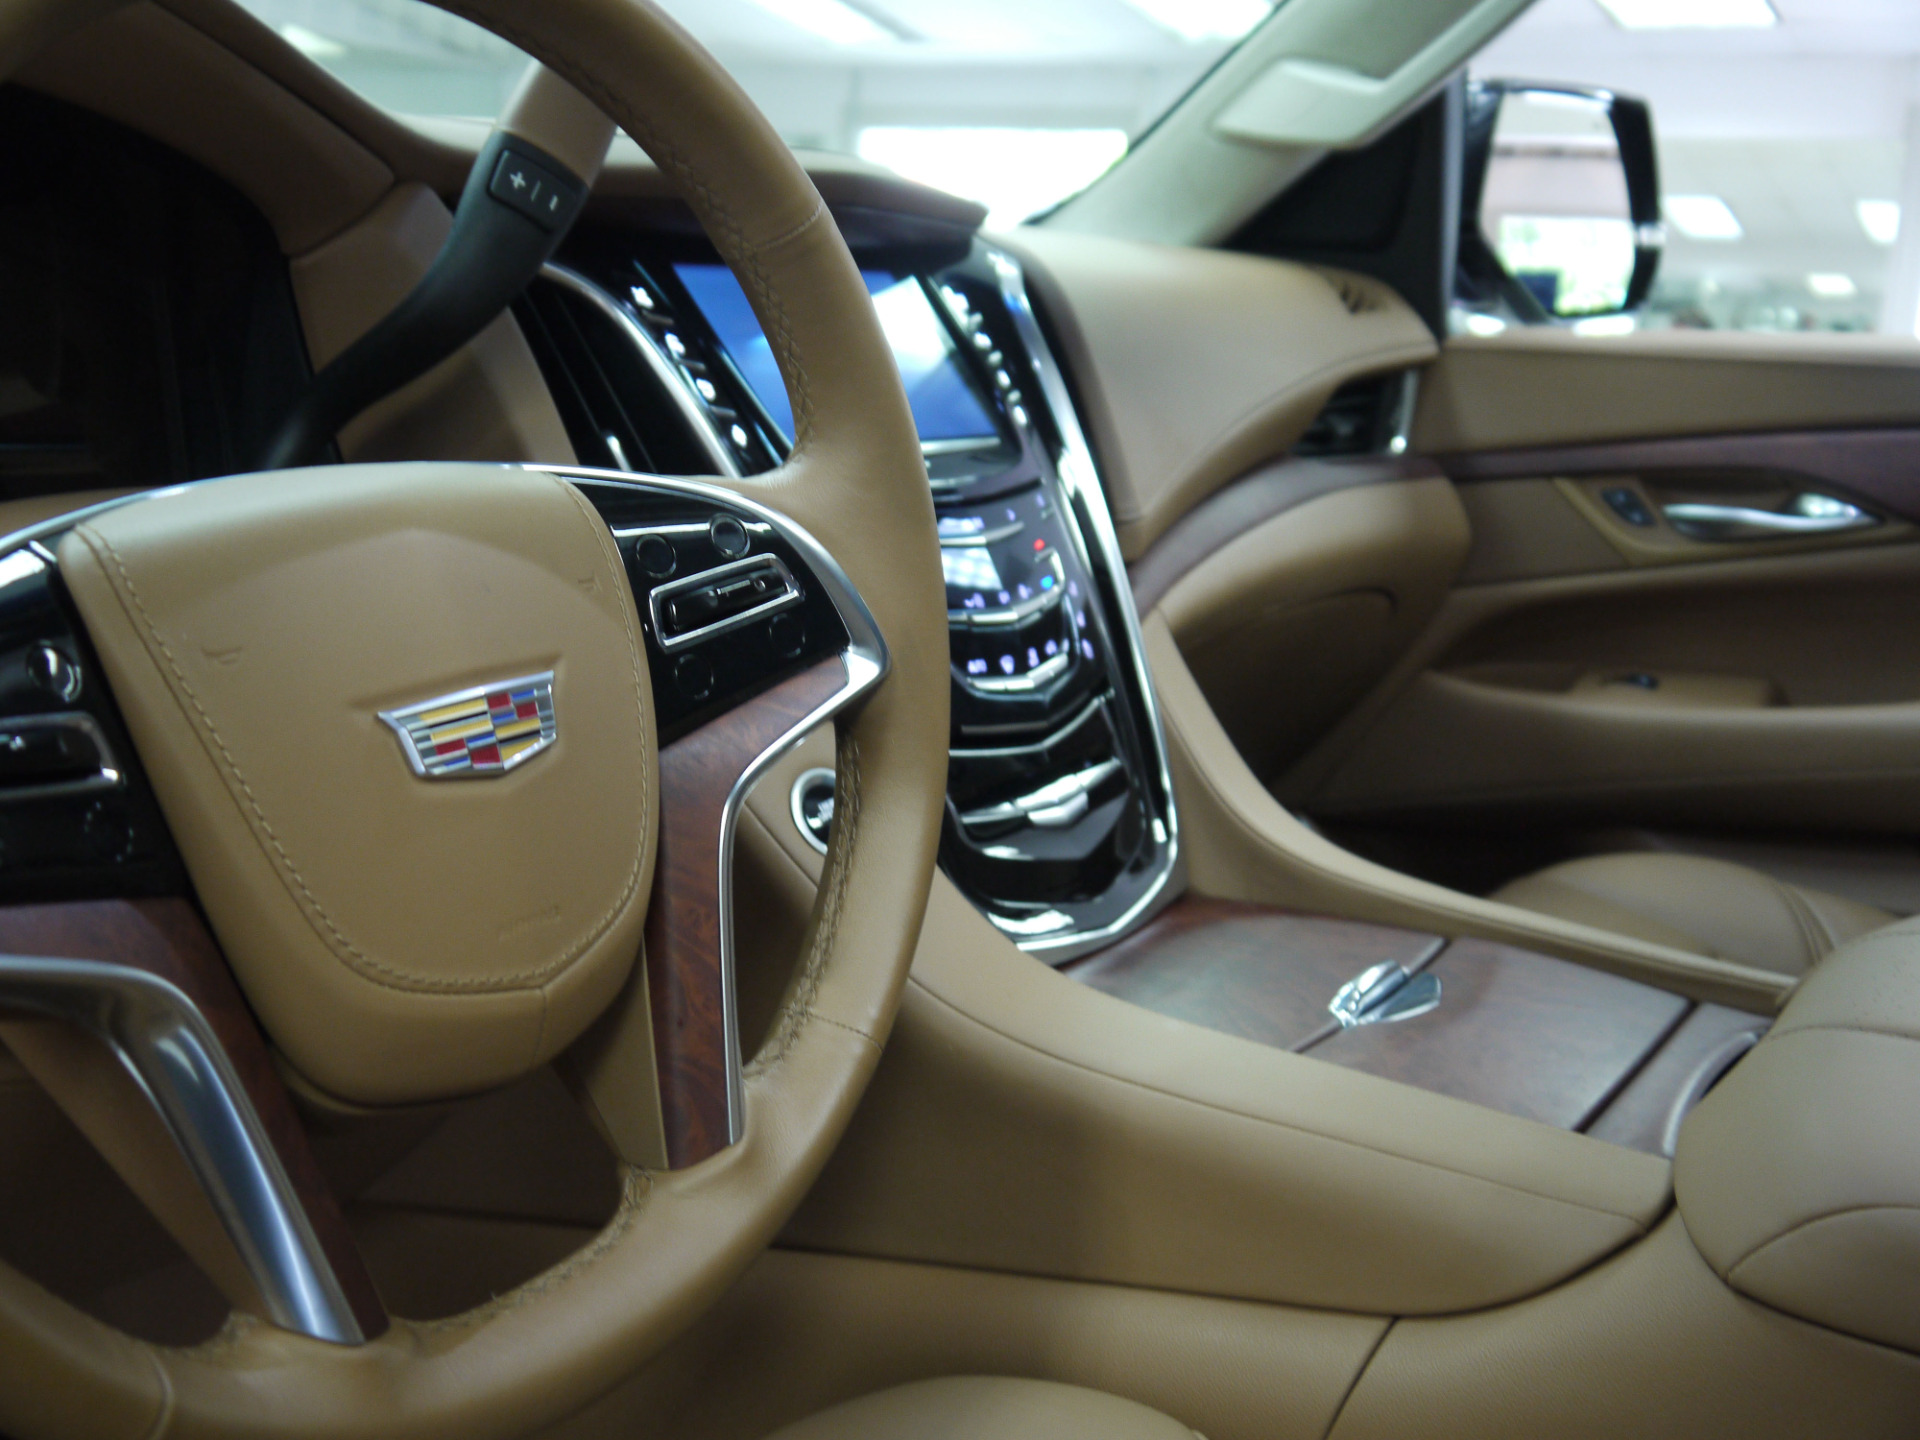 Used 2015 Cadillac Escalade Esv Platinum Edition Marietta Ga